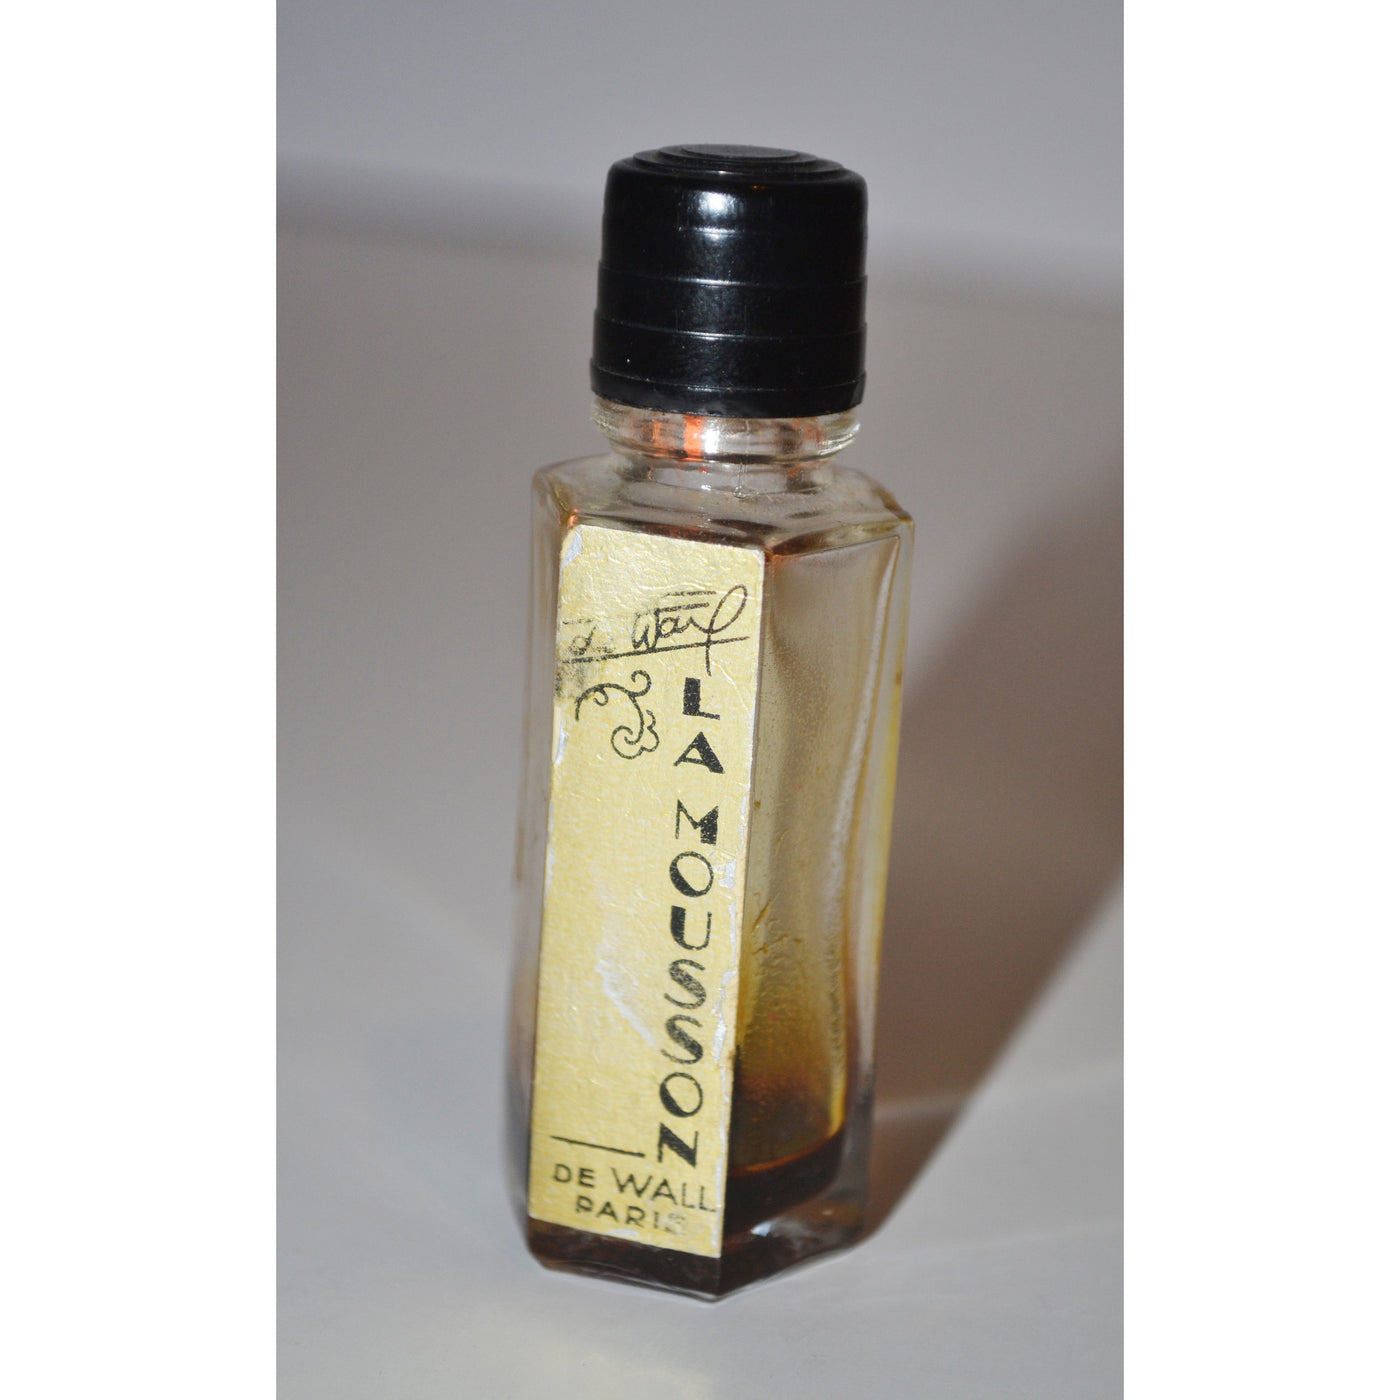 Vintage La Mousson Paris Perfume Mini By De Wall